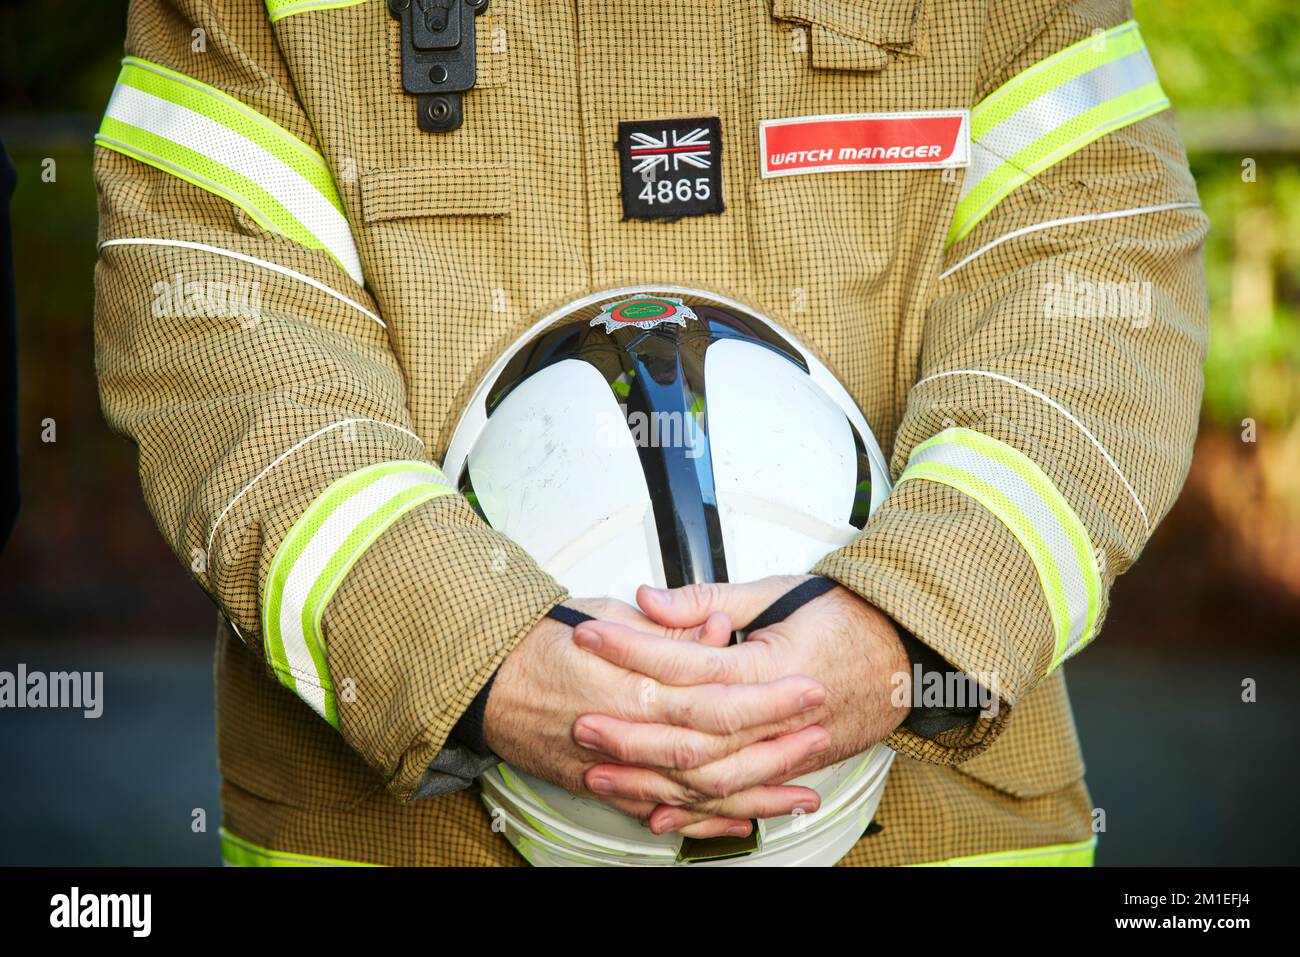 Pompier montrant du respect en tenant son casque Banque D'Images